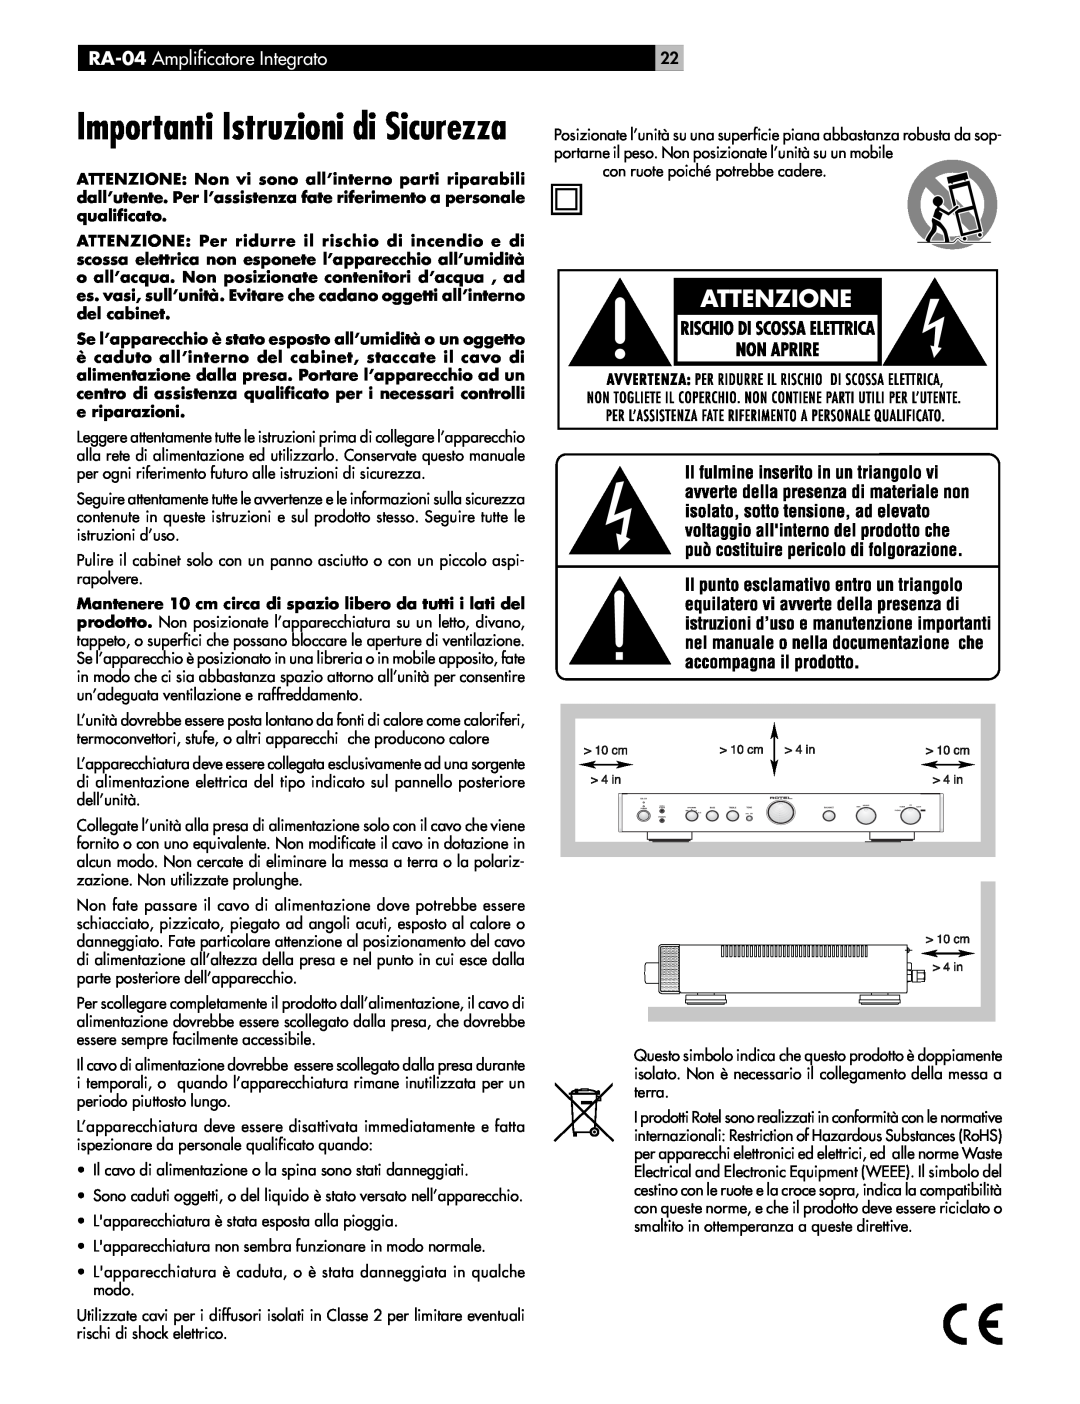 Rotel owner manual Importanti Istruzioni di Sicurezza, RA-04 Amplificatore Integrato 